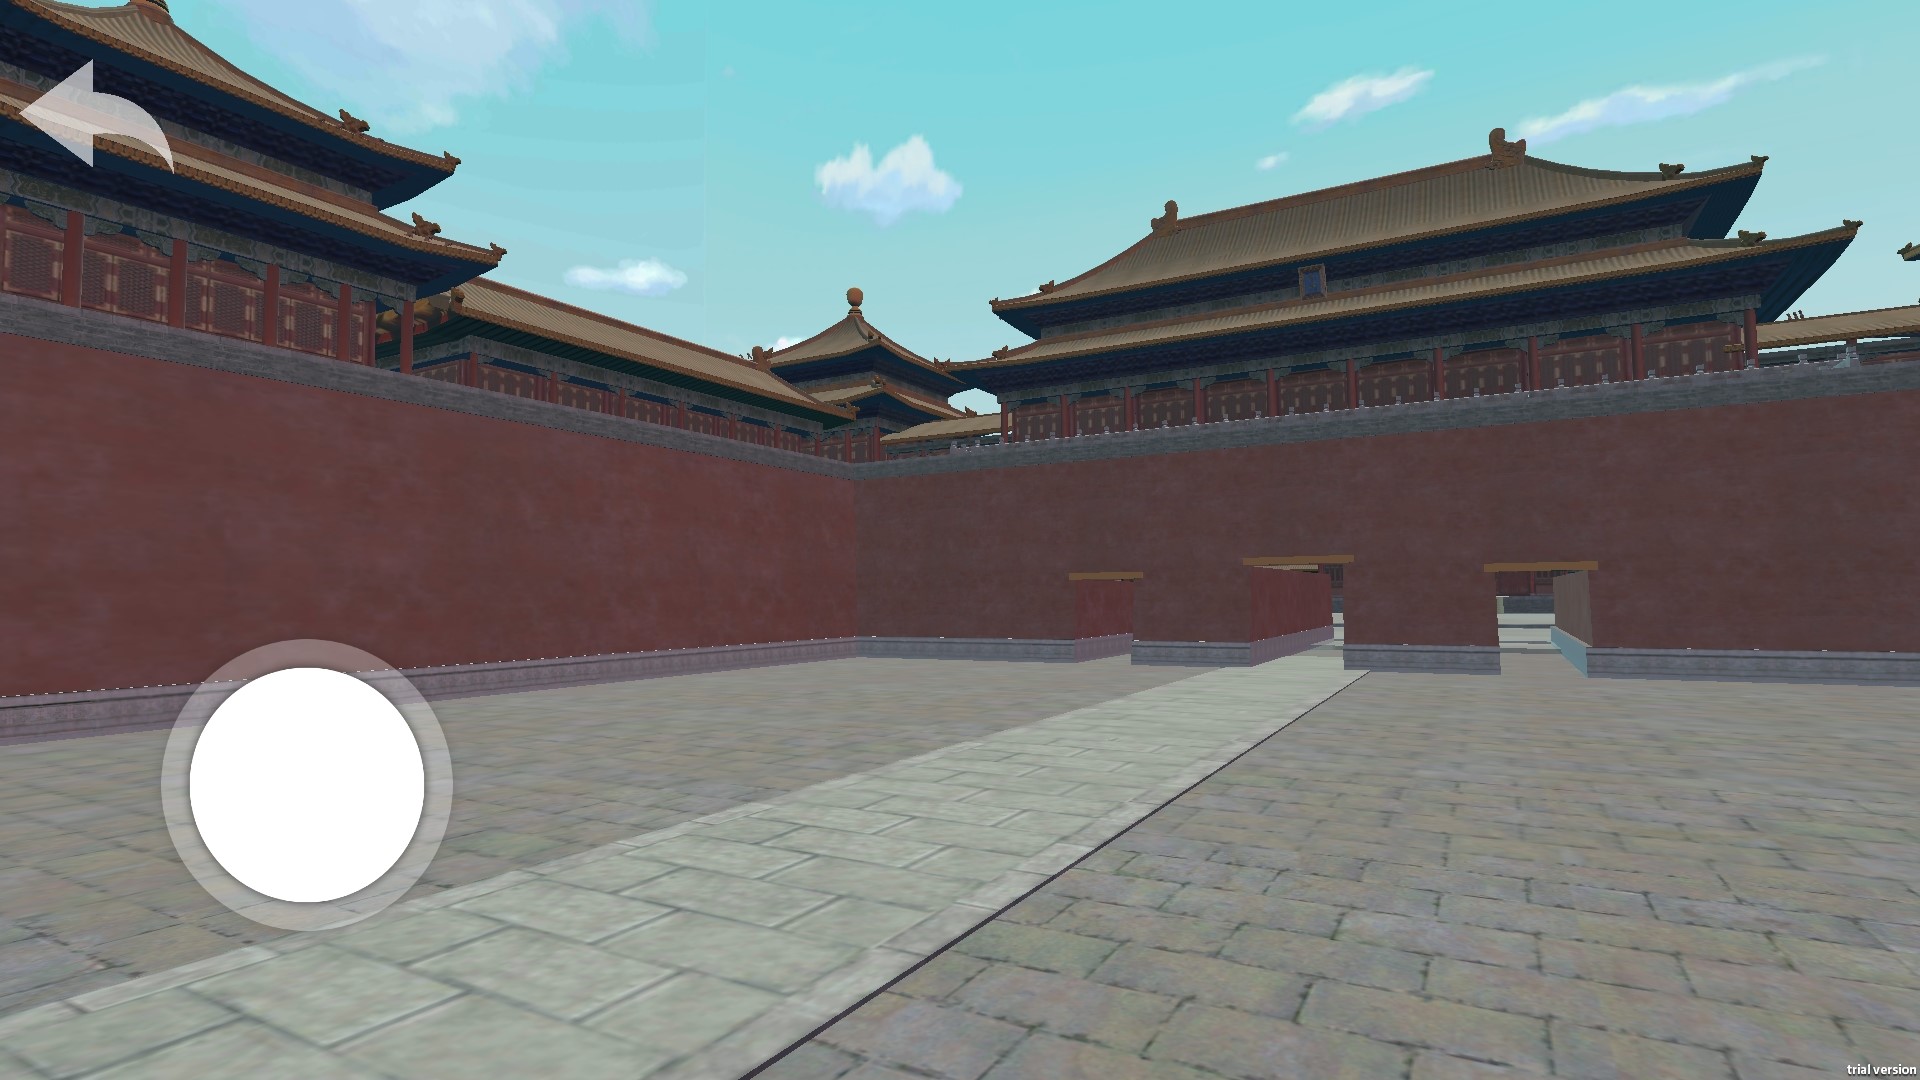 ar故宫是基于增强现实技术打造的一款全方位2d 3d视角游览故宫的应用